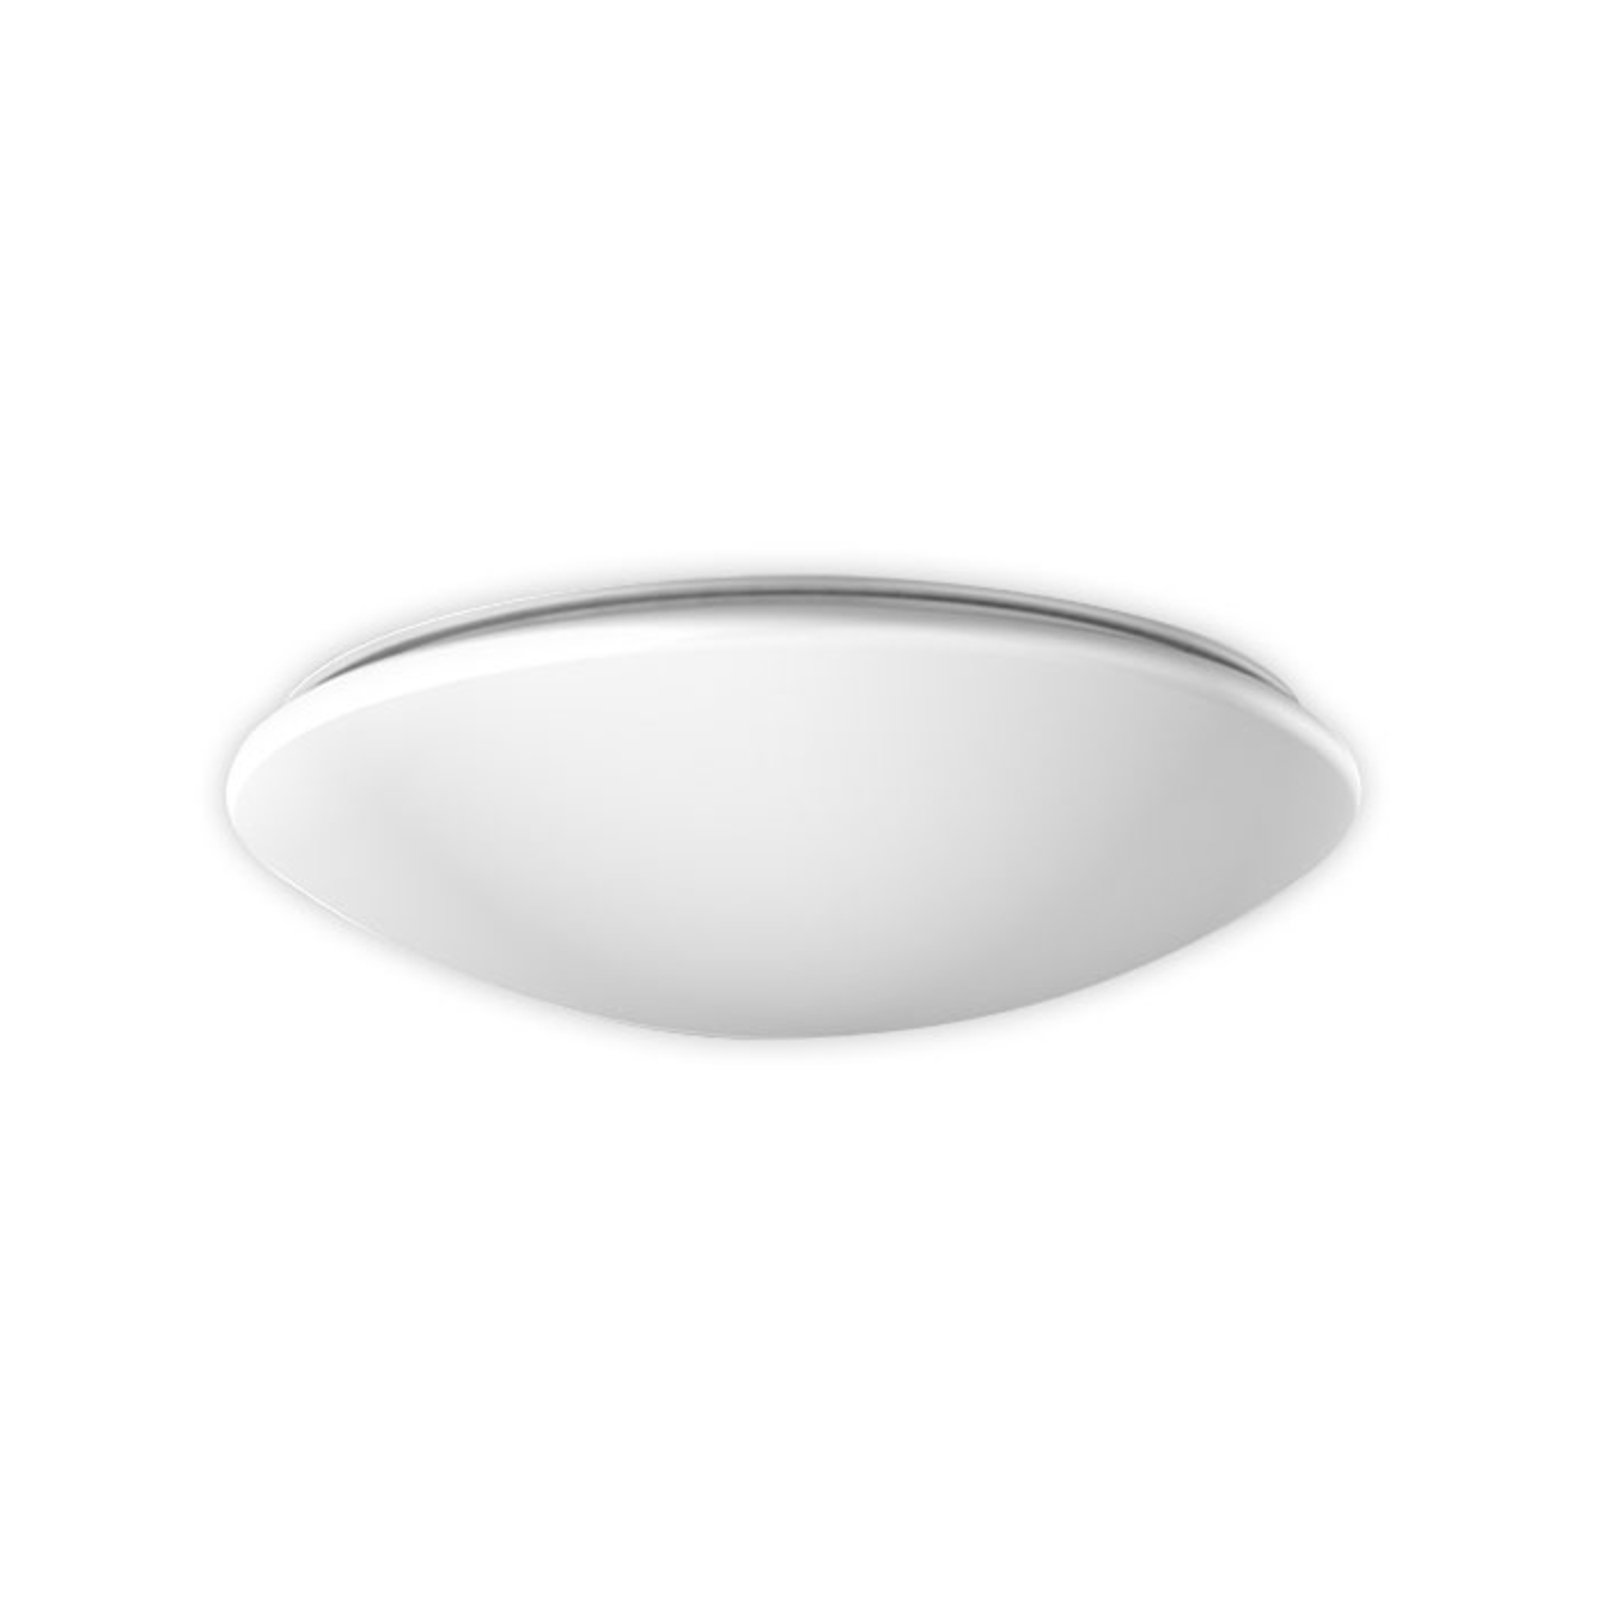 RZB Flat Polymero ceiling light DALI 21W 36cm 830